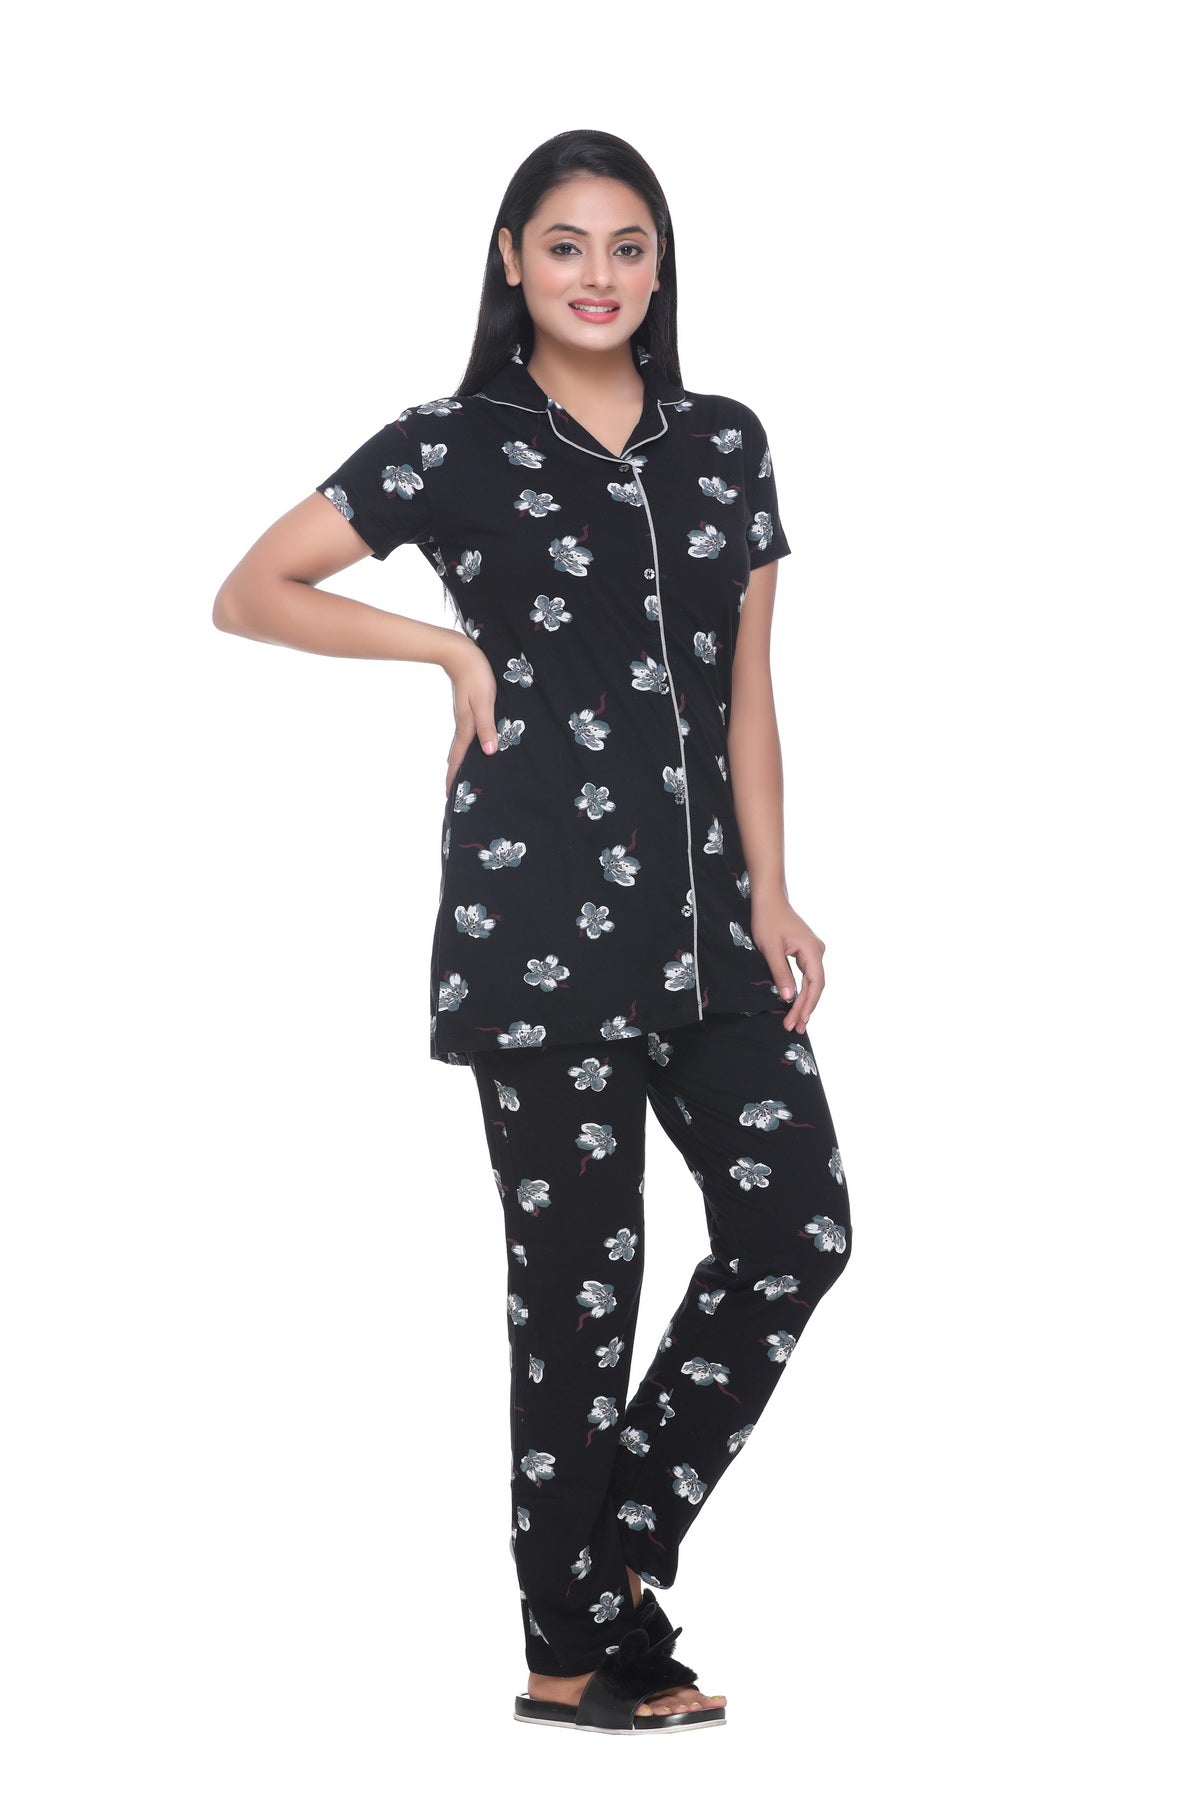 Party Favor Womens Silk Satin Pajamas Pyjamas Set Long Sleeve Sleepwear  Pijama Pajamas Suit Female Sleep Two Piece Loungewear Plus254v From Zfryck,  $26.8 | DHgate.Com